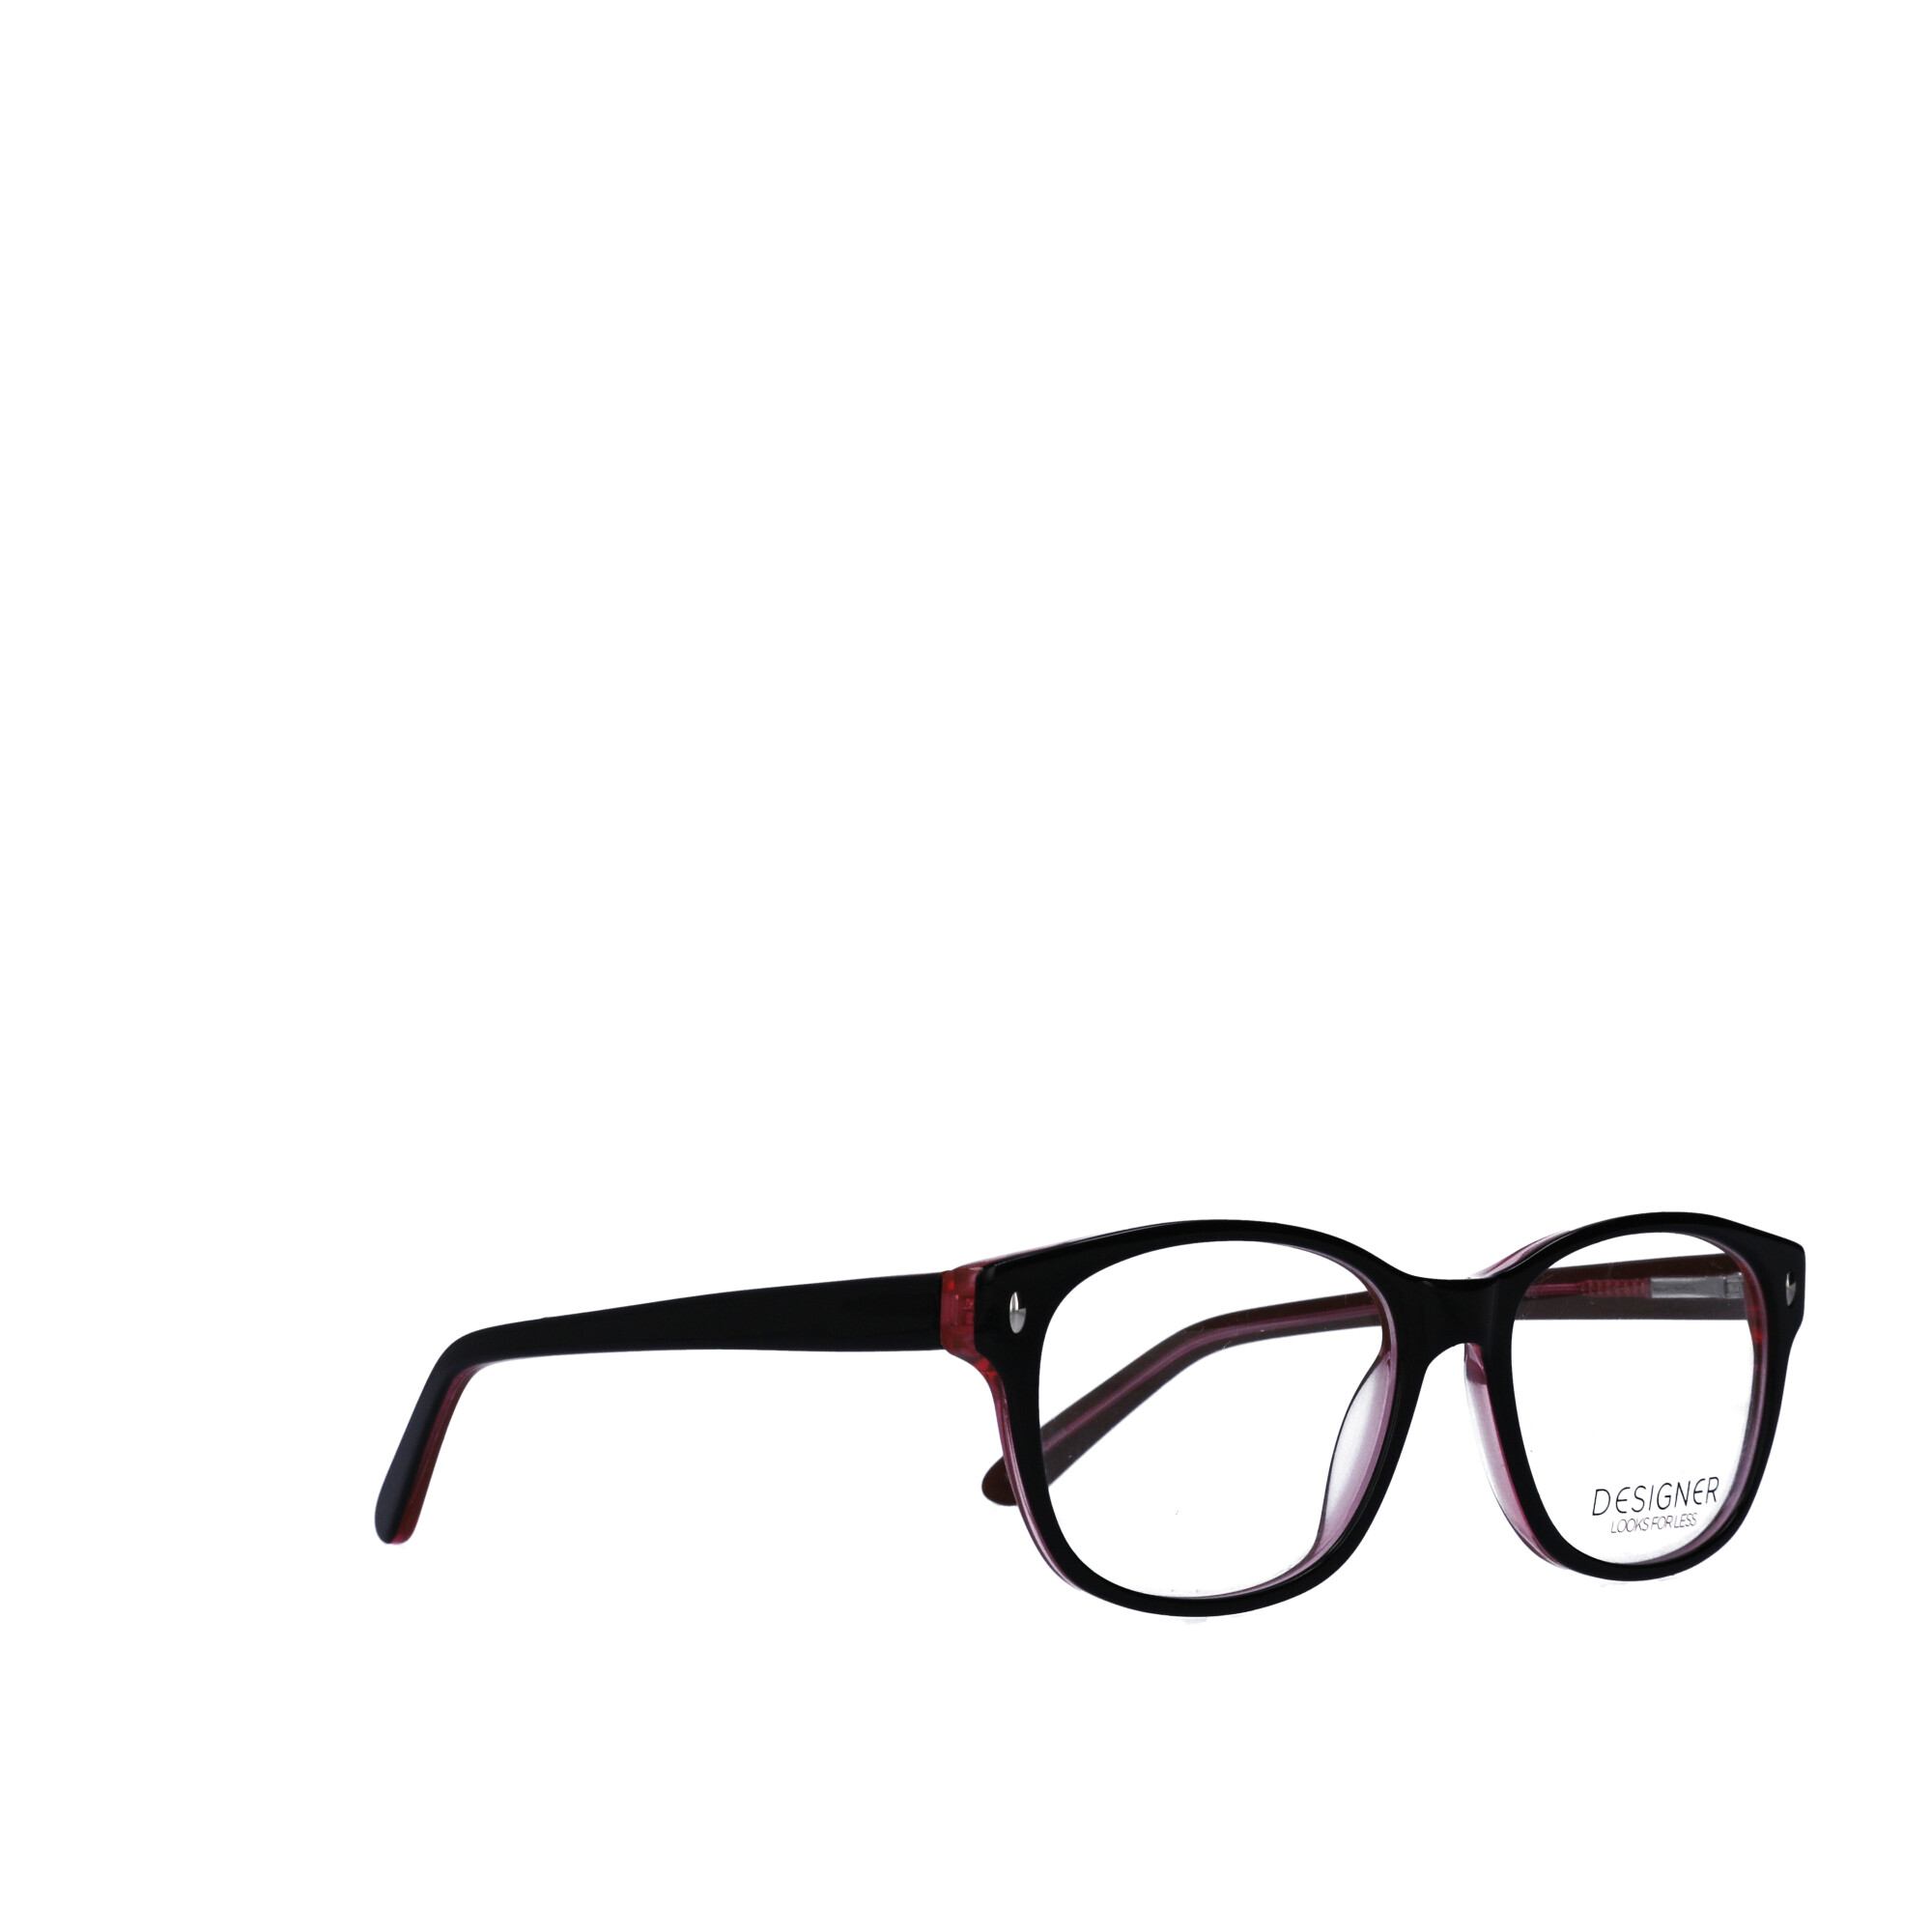 Contour Women's Rx'able Eyeglasses, FM13041 Black/Red - image 3 of 9